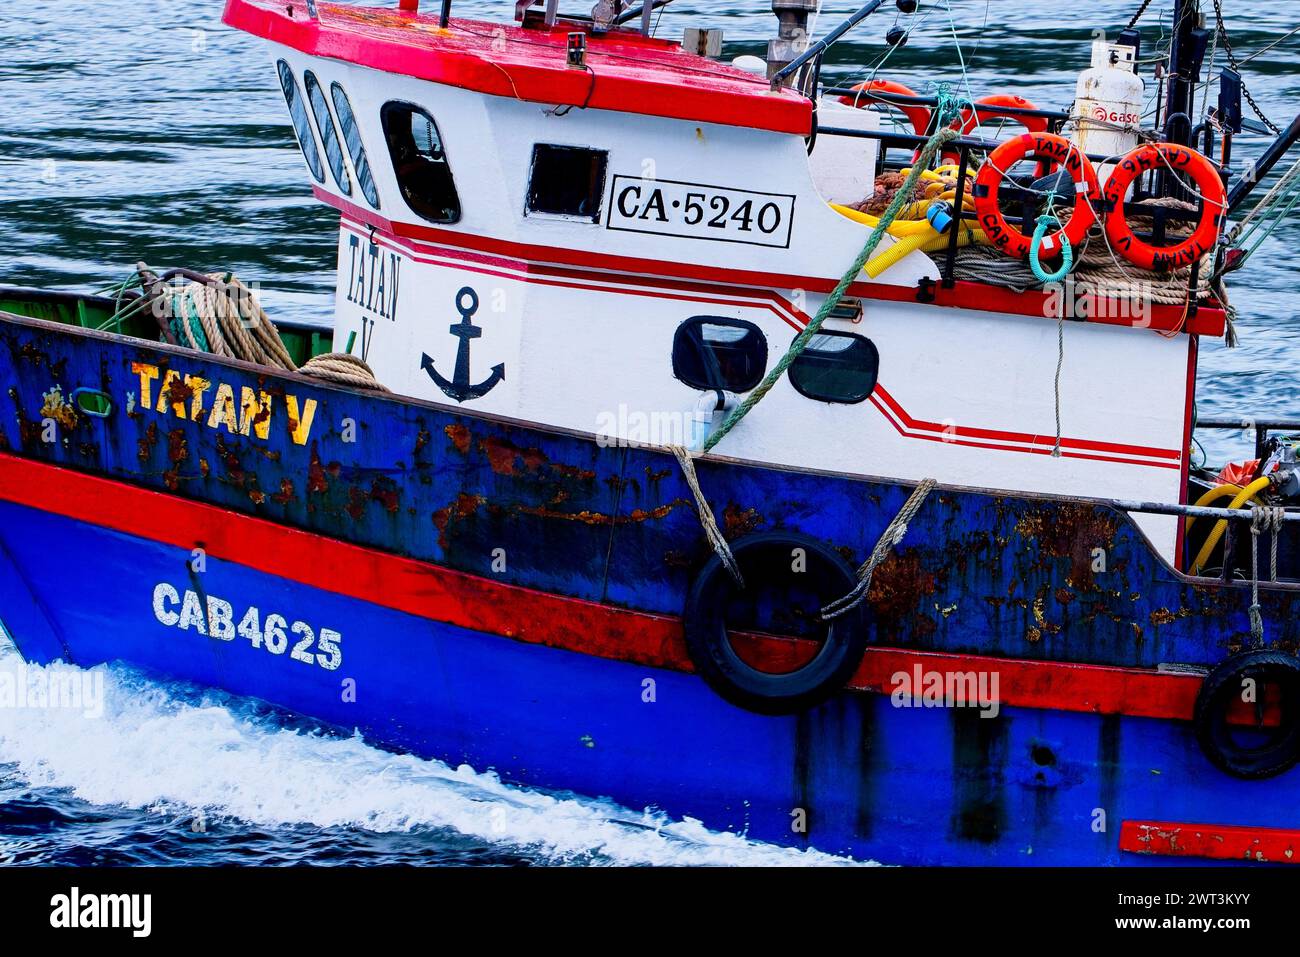 Un peschereccio colorato a strascico lungo lo stretto di Magellano. Lo stretto di Magellano è un canale che collega l'oceano Atlantico e il Pacifico. Foto Stock